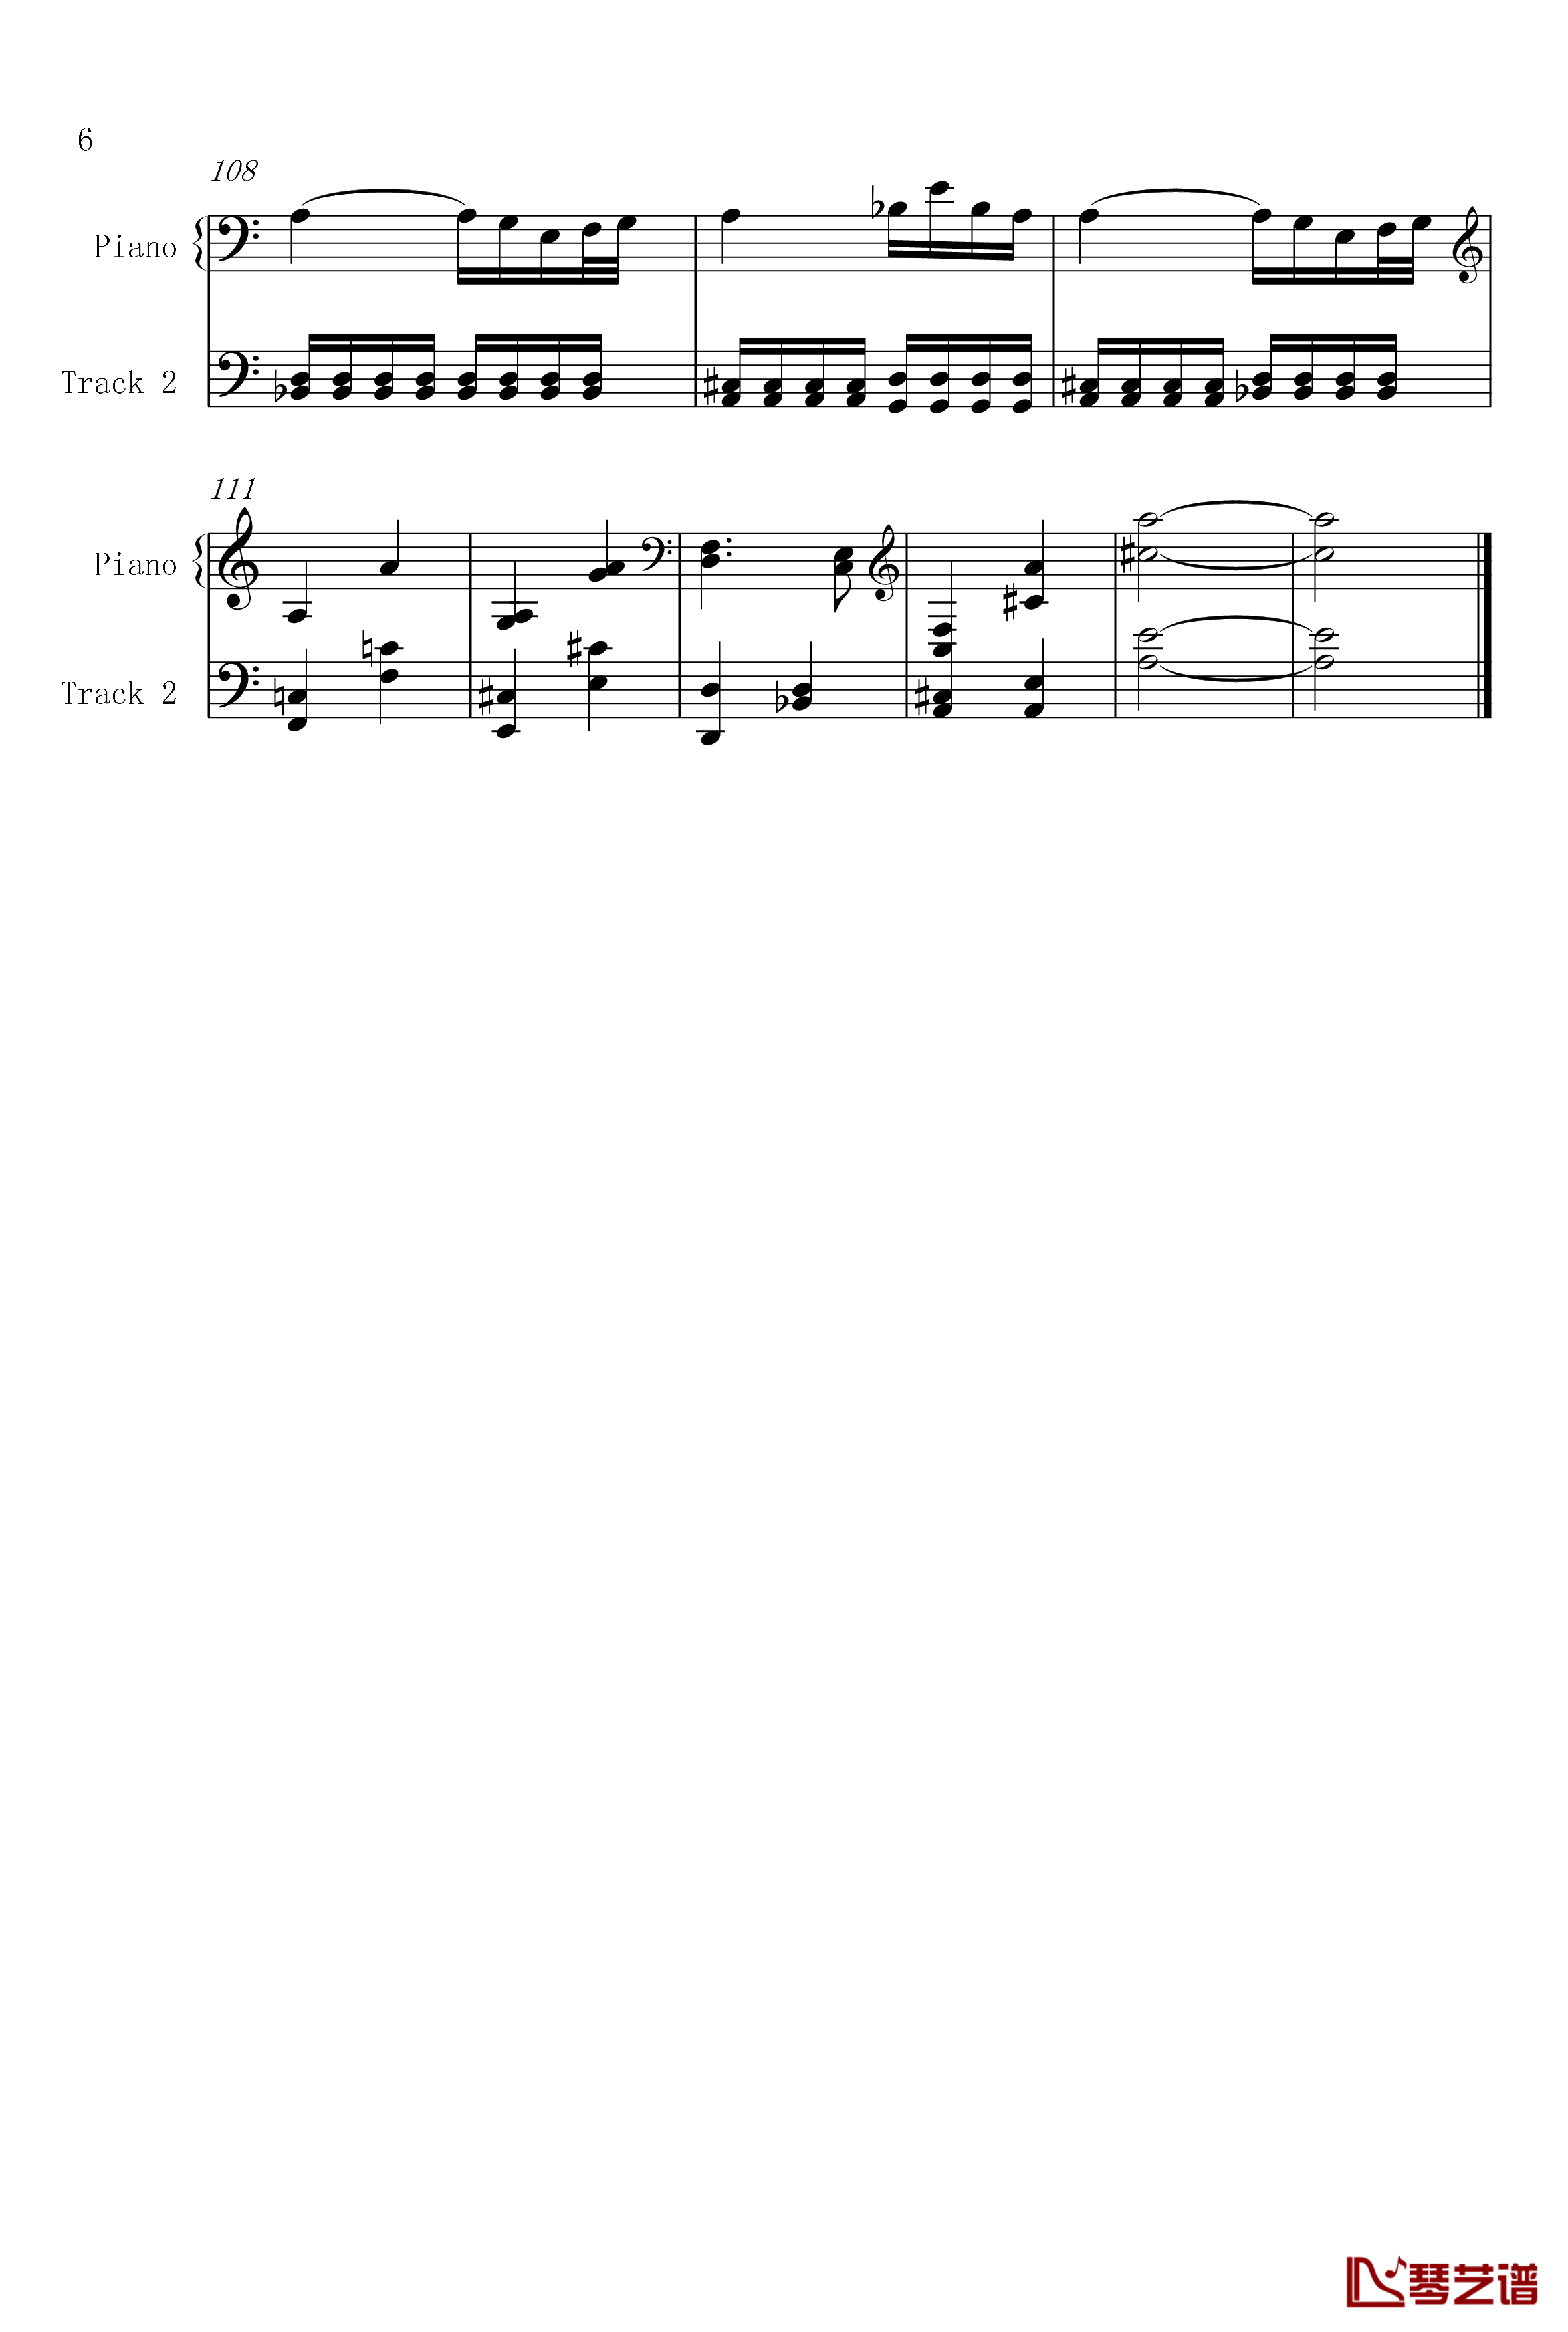 菲比赫小奏鸣曲钢琴谱-第一、二乐章-菲比赫6